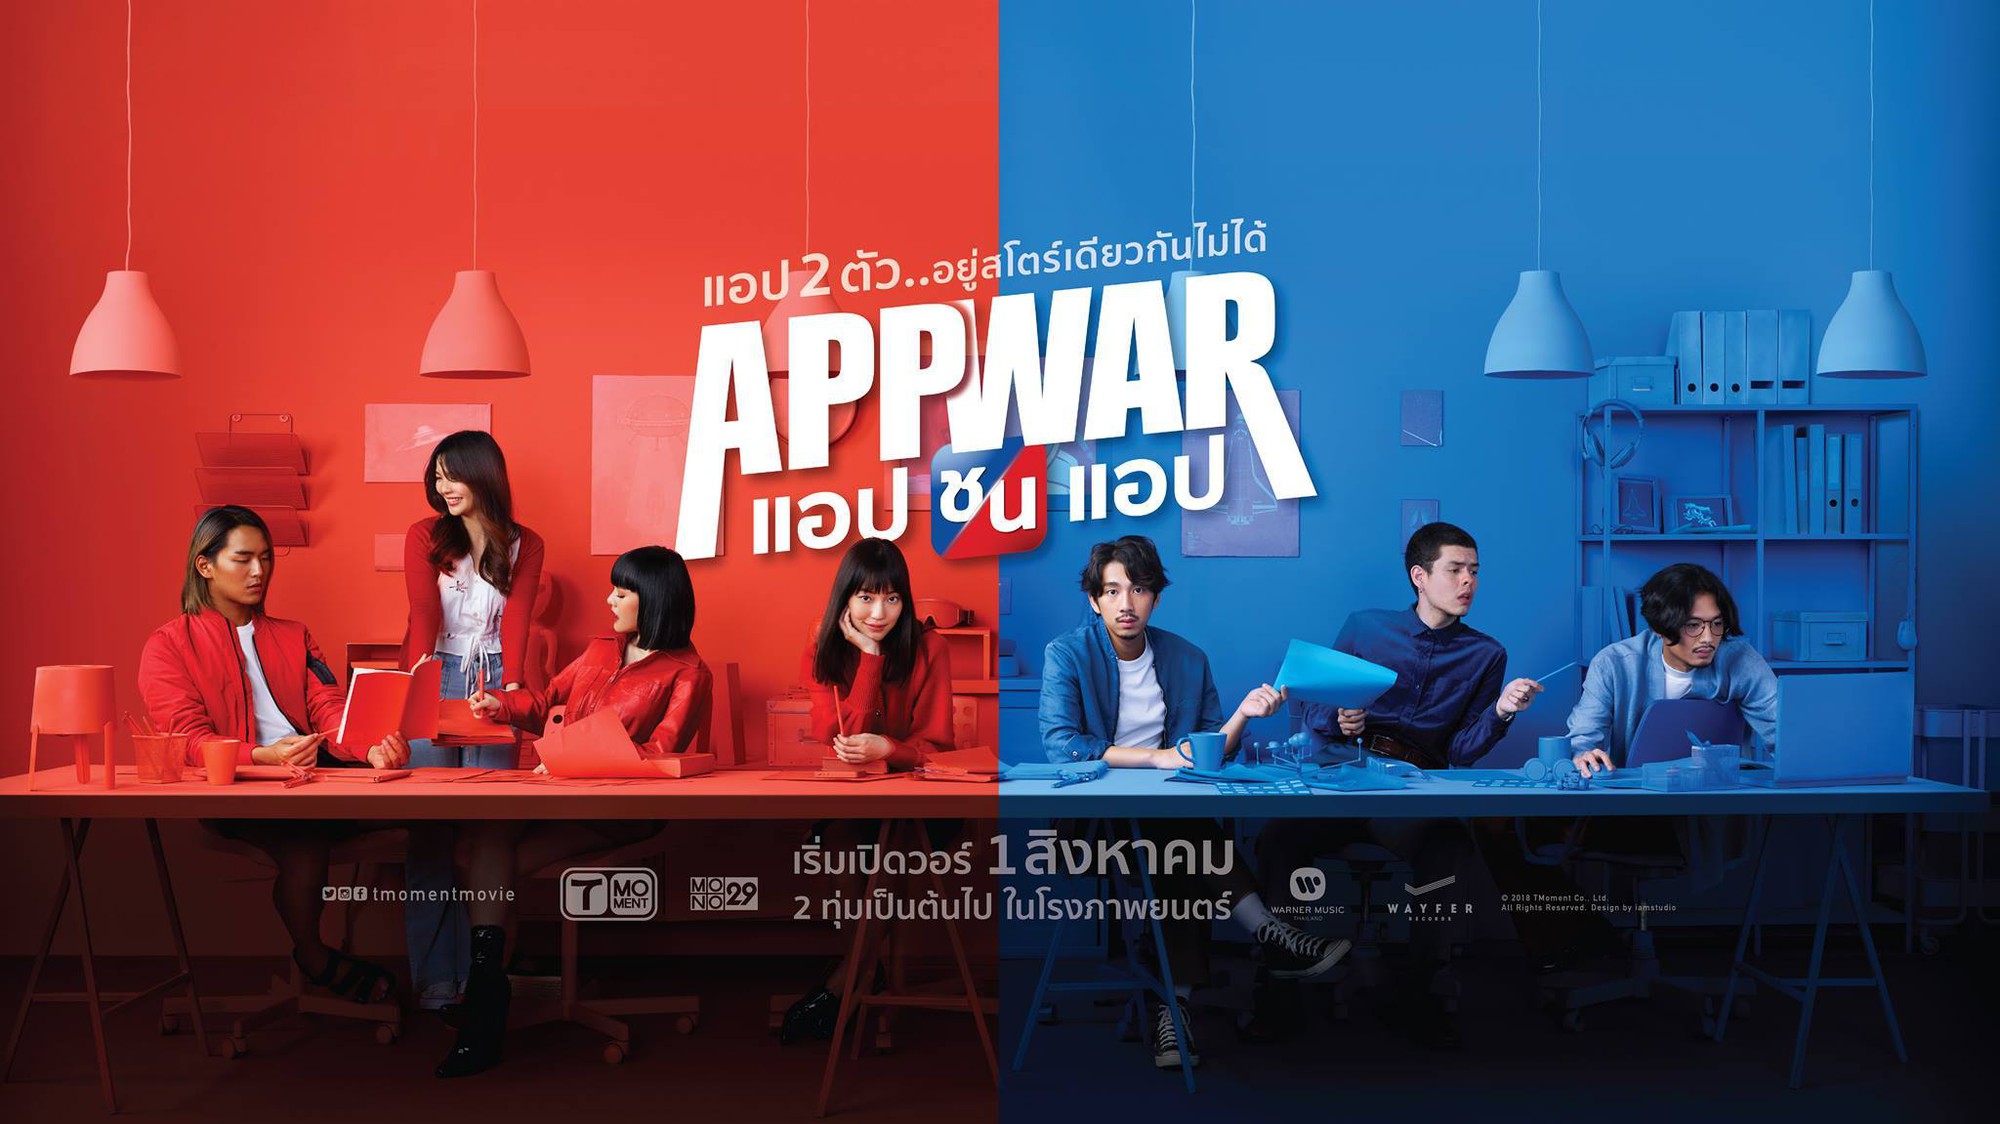 App War: Tuyệt phẩm bất ngờ của điện ảnh Thái Lan trong năm 2018 - Ảnh 1.